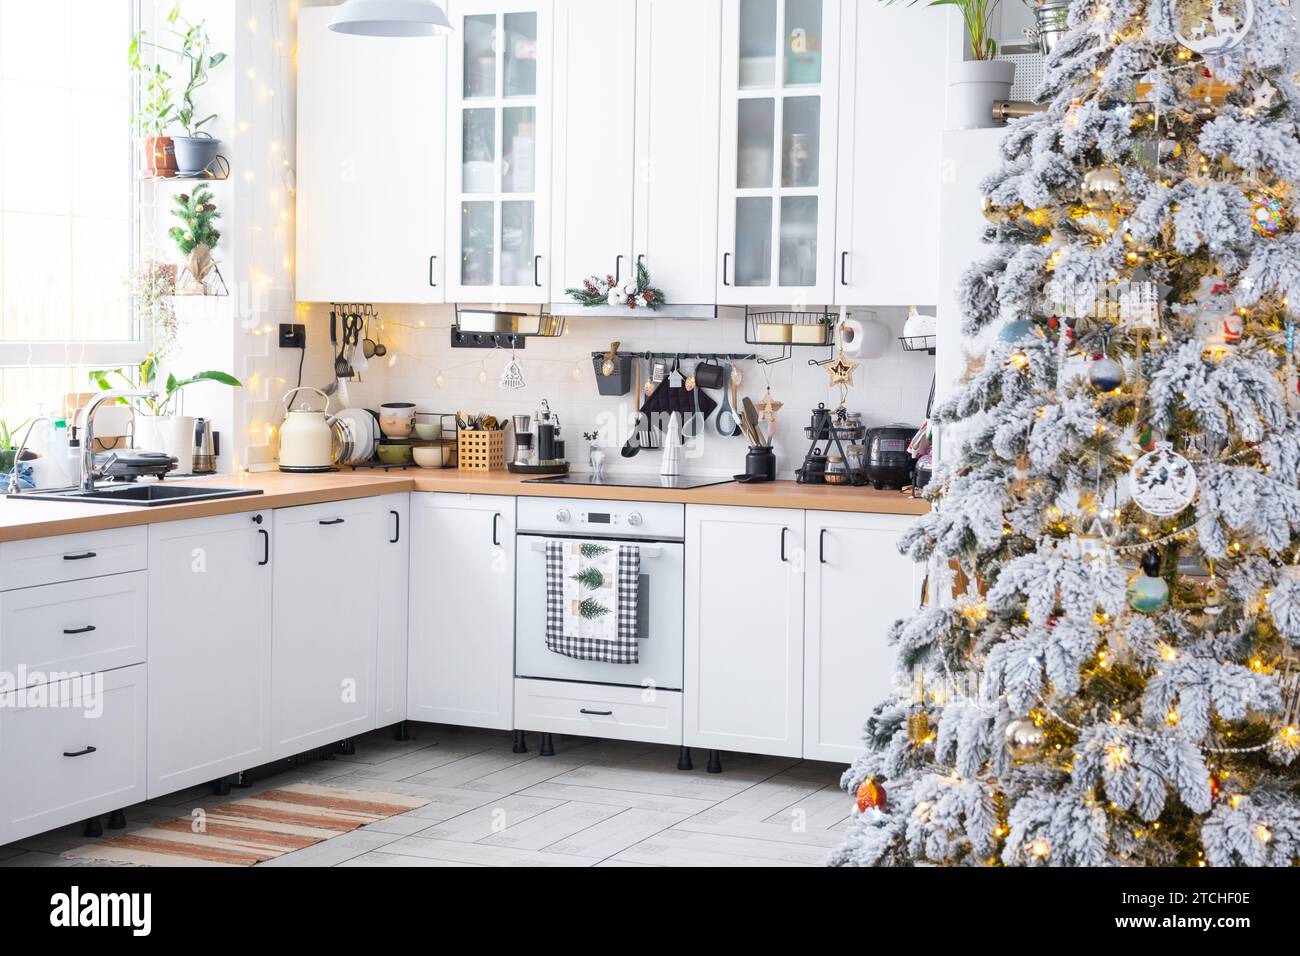 Decorazioni natalizie natalizie in cucina bianca, interni rustici moderni con un albero di Natale innevato e luci delle fate. Capodanno, atmosfera natalizia, casa accogliente. TH Foto Stock